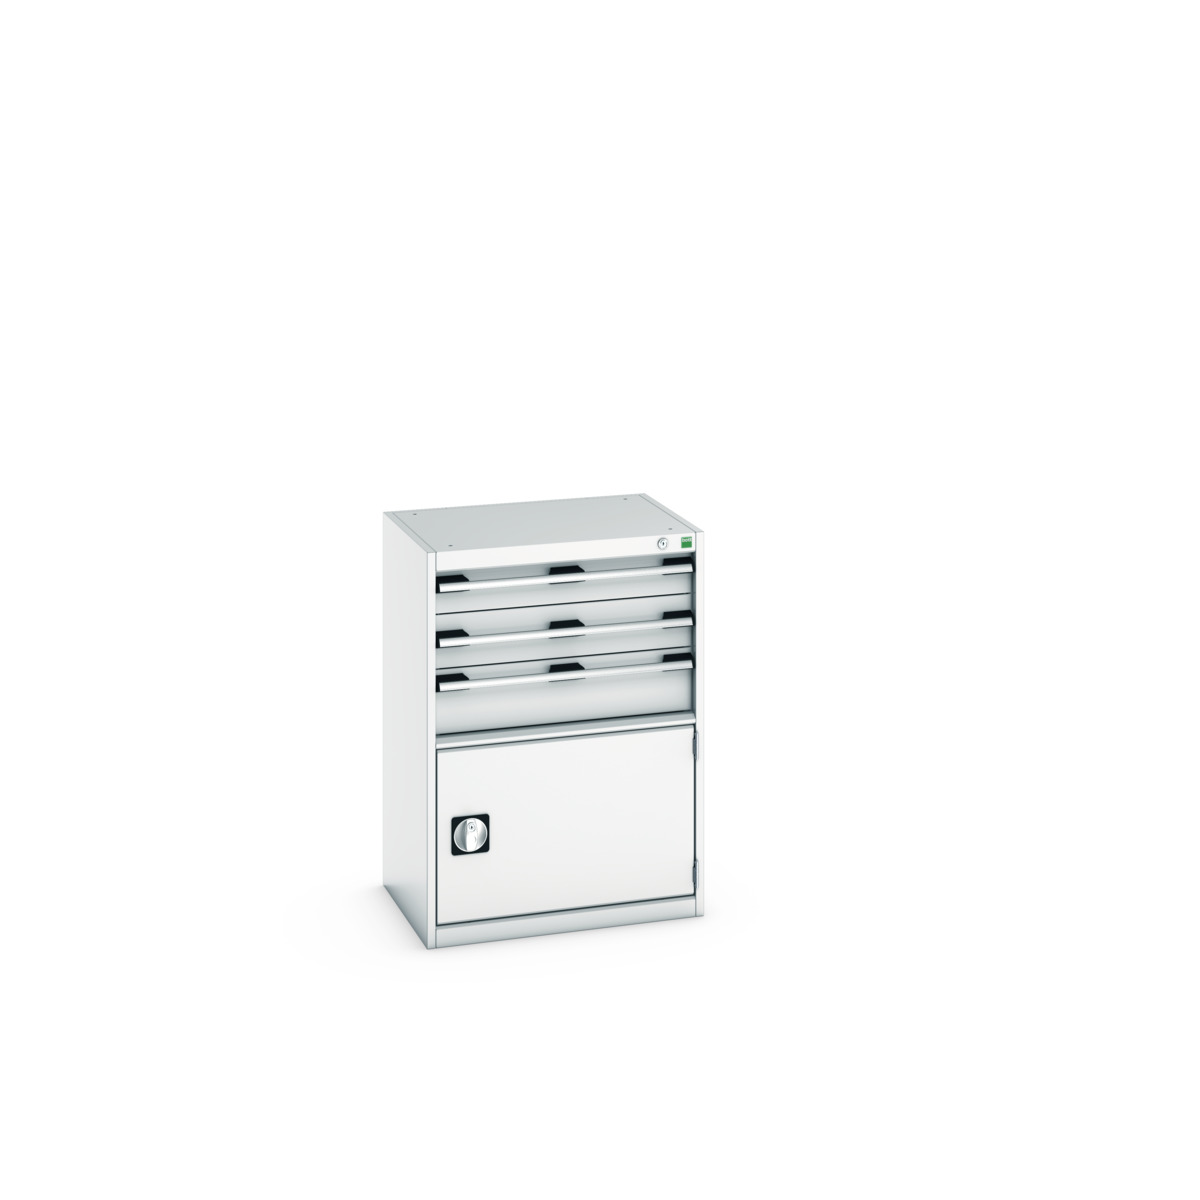 40011048.16V - cubio drawer-door cabinet